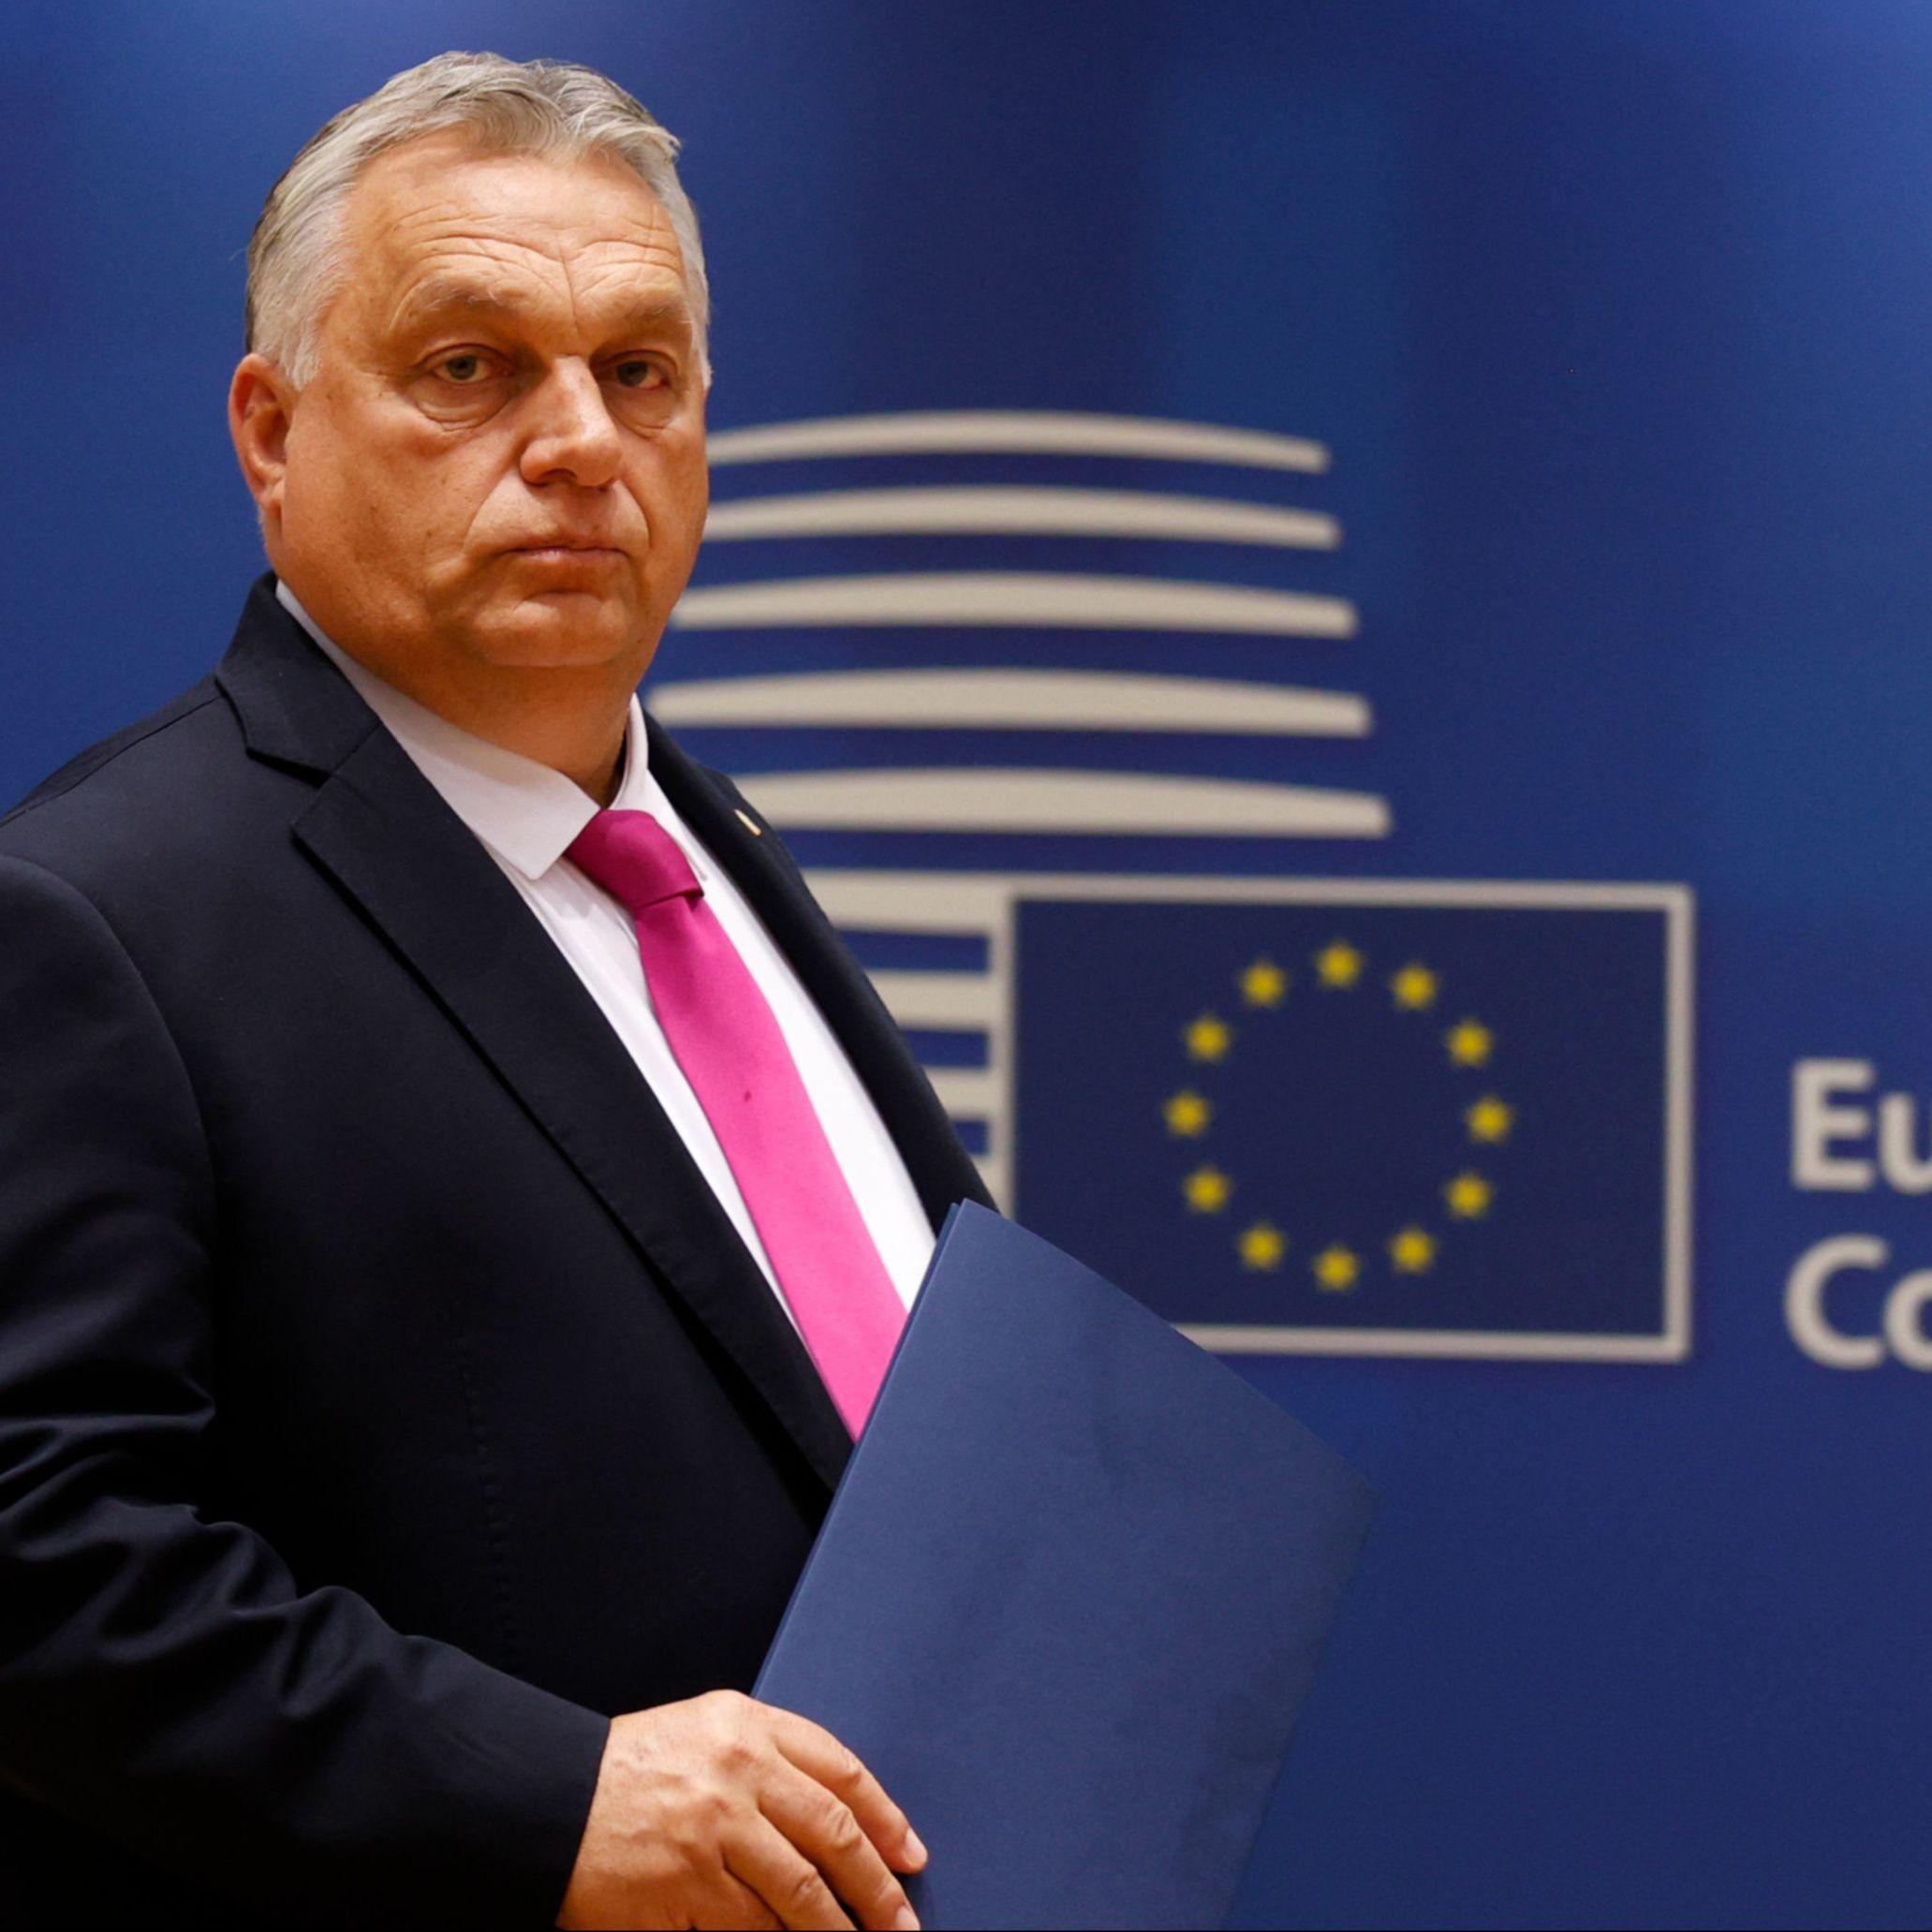 Prijetnja Orbana EU: "Brisel vodi Evropu u smrt, moramo vas mijenjati, ne napuštati"